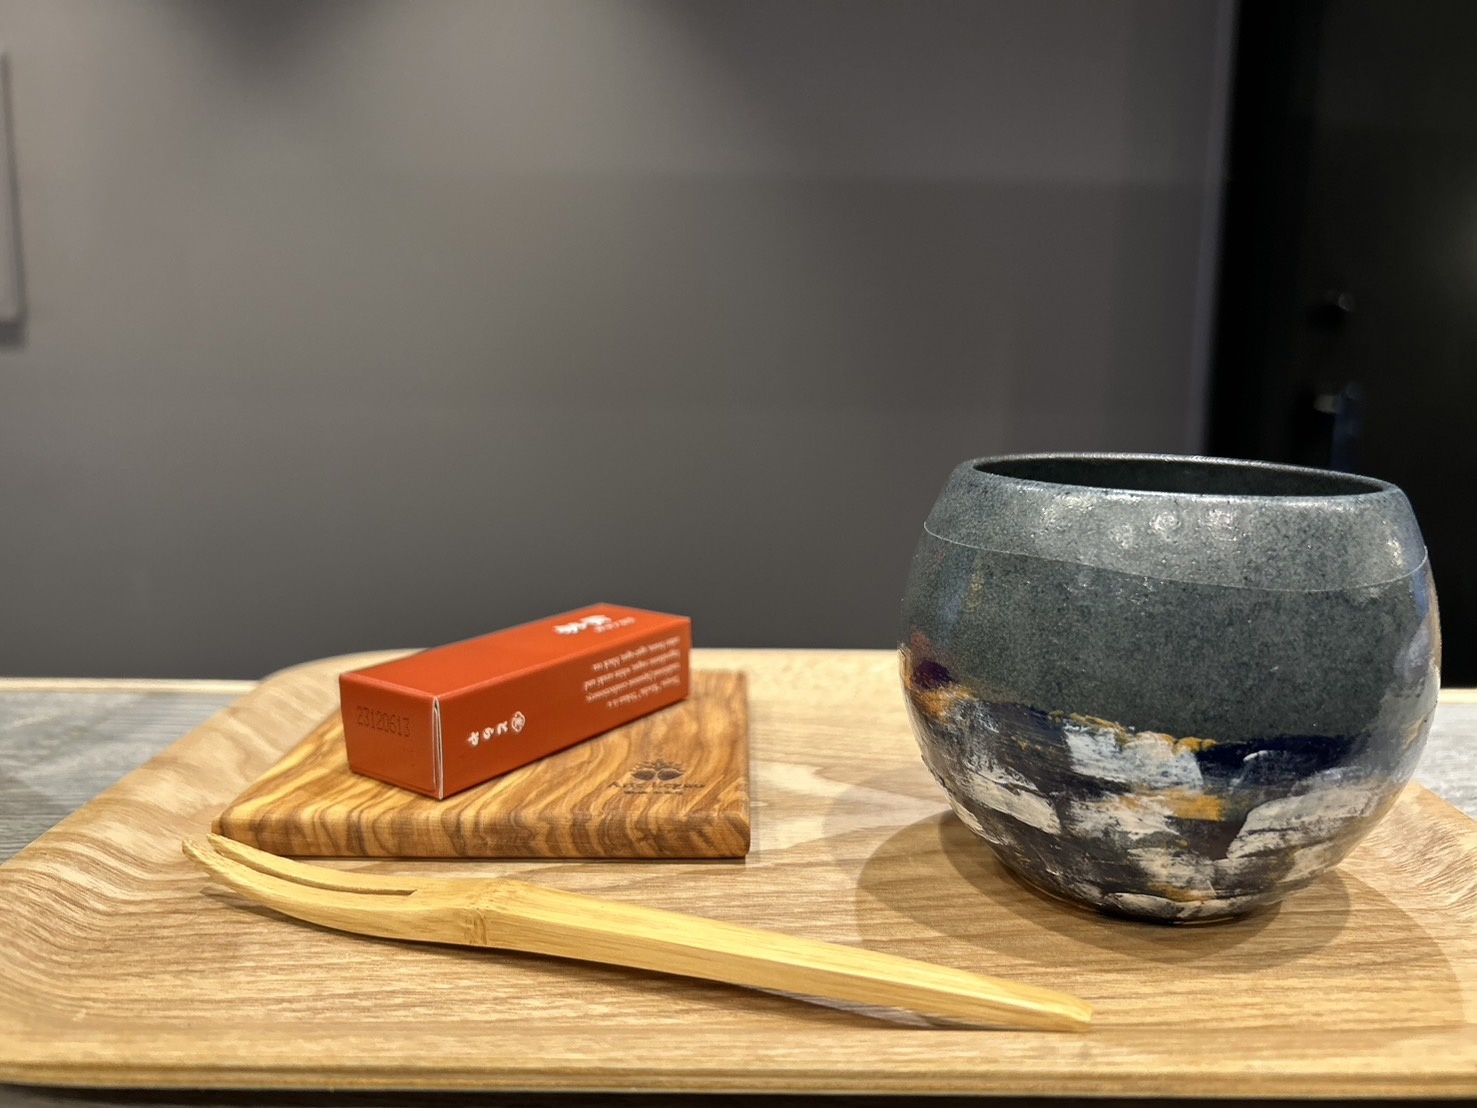 カラフルな江戸塗りで器を彩る、お茶とお菓子付きのプラン@原宿の写真4枚目